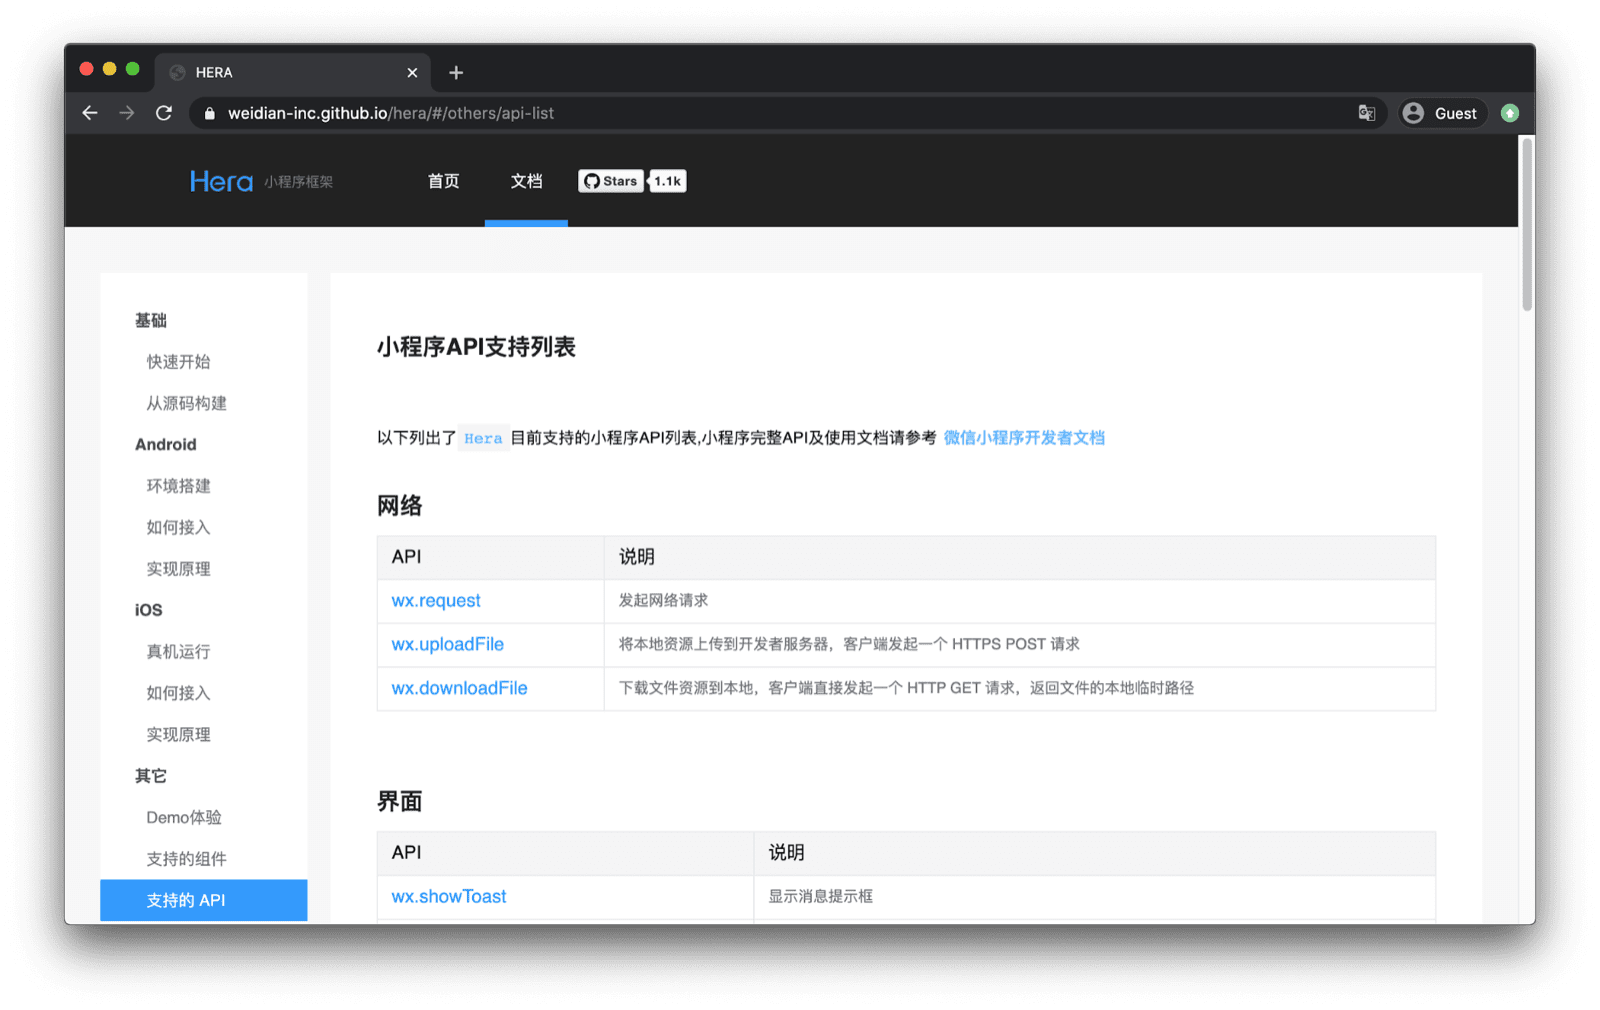 Tài liệu về khung ứng dụng nhỏ của Hera liệt kê các API WeChat mà khung hỗ trợ như &quot;wx.request&quot;, &quot;wx.uploadFile&quot;, v.v.